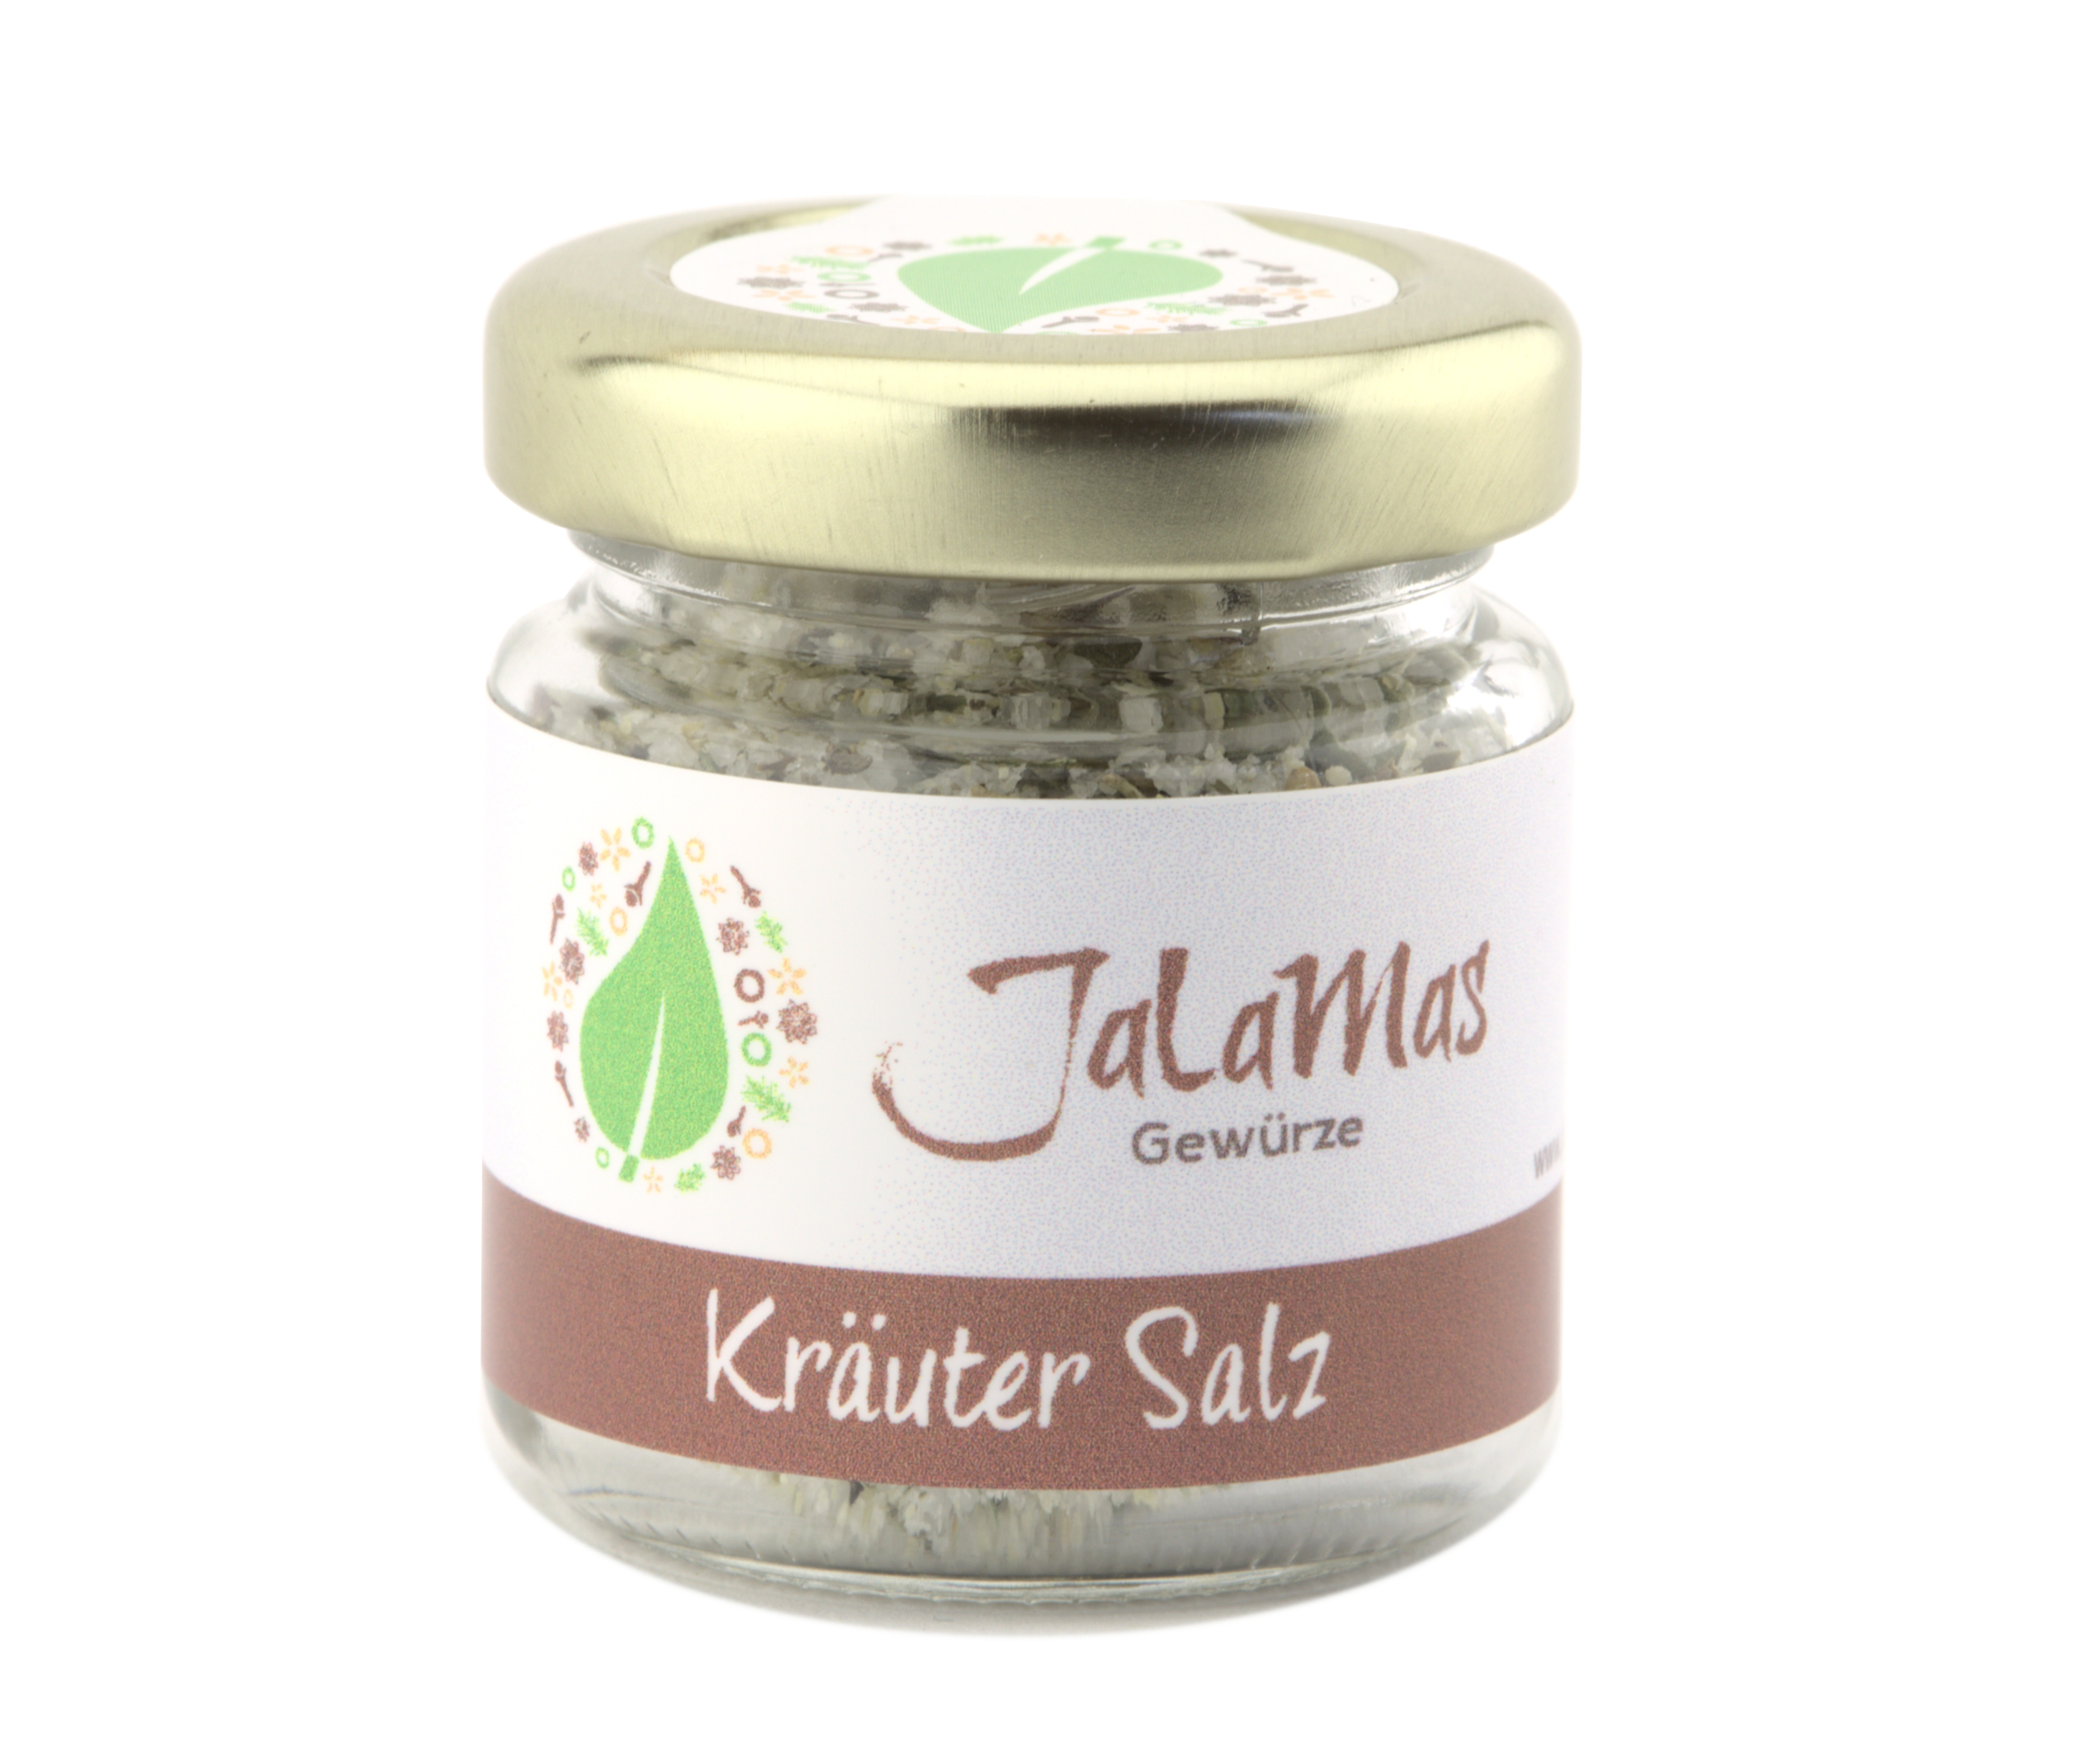 Kräuter Salz